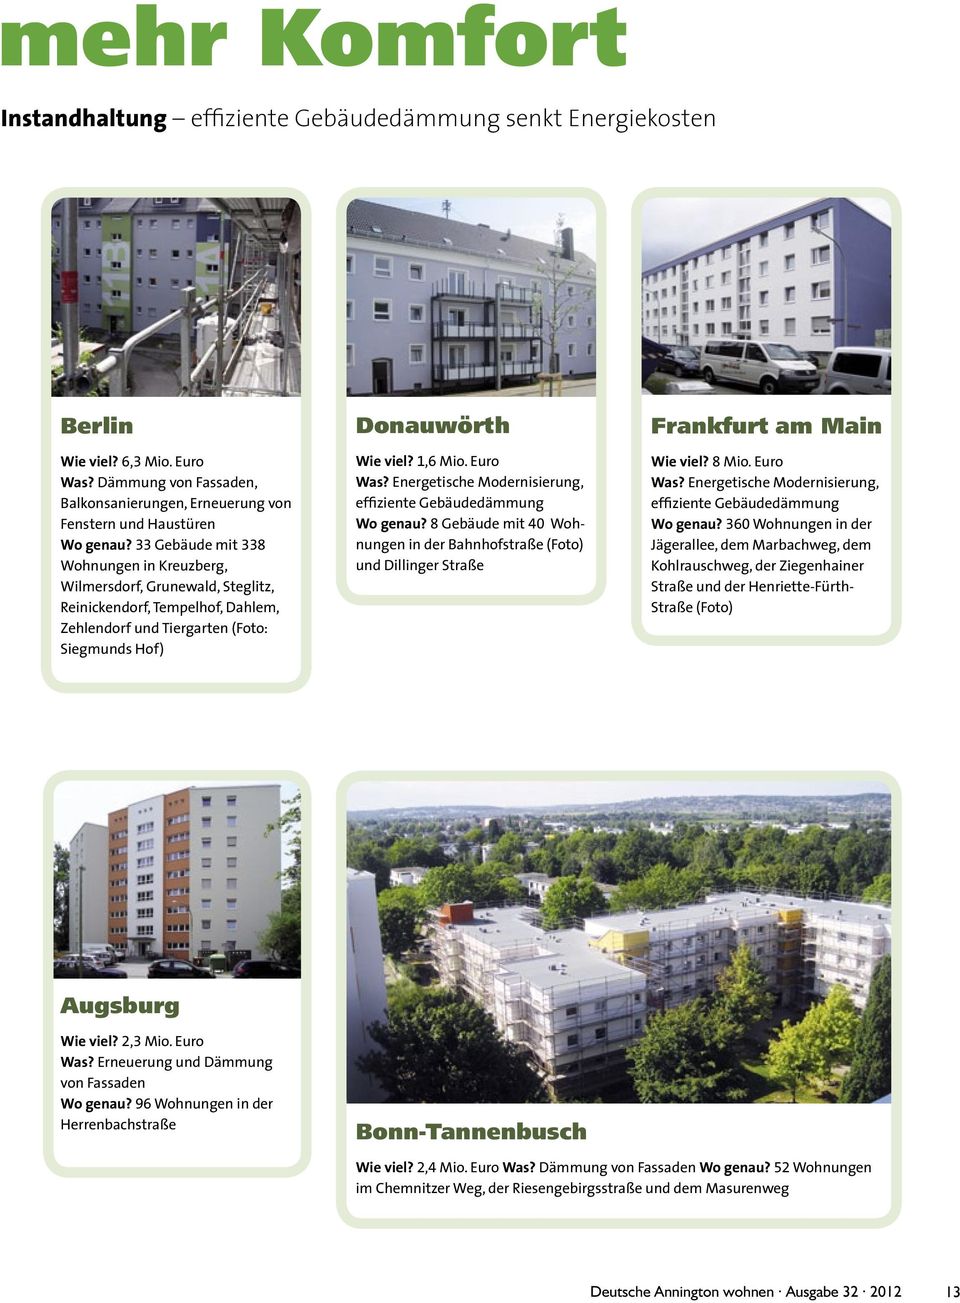 Energetische Modernisierung, effiziente Gebäudedämmung Wo genau? 8 Gebäude mit 40 Wohnungen in der Bahnhofstraße (Foto) und Dillinger Straße Frankfurt am Main Wie viel? 8 Mio. Euro Was?